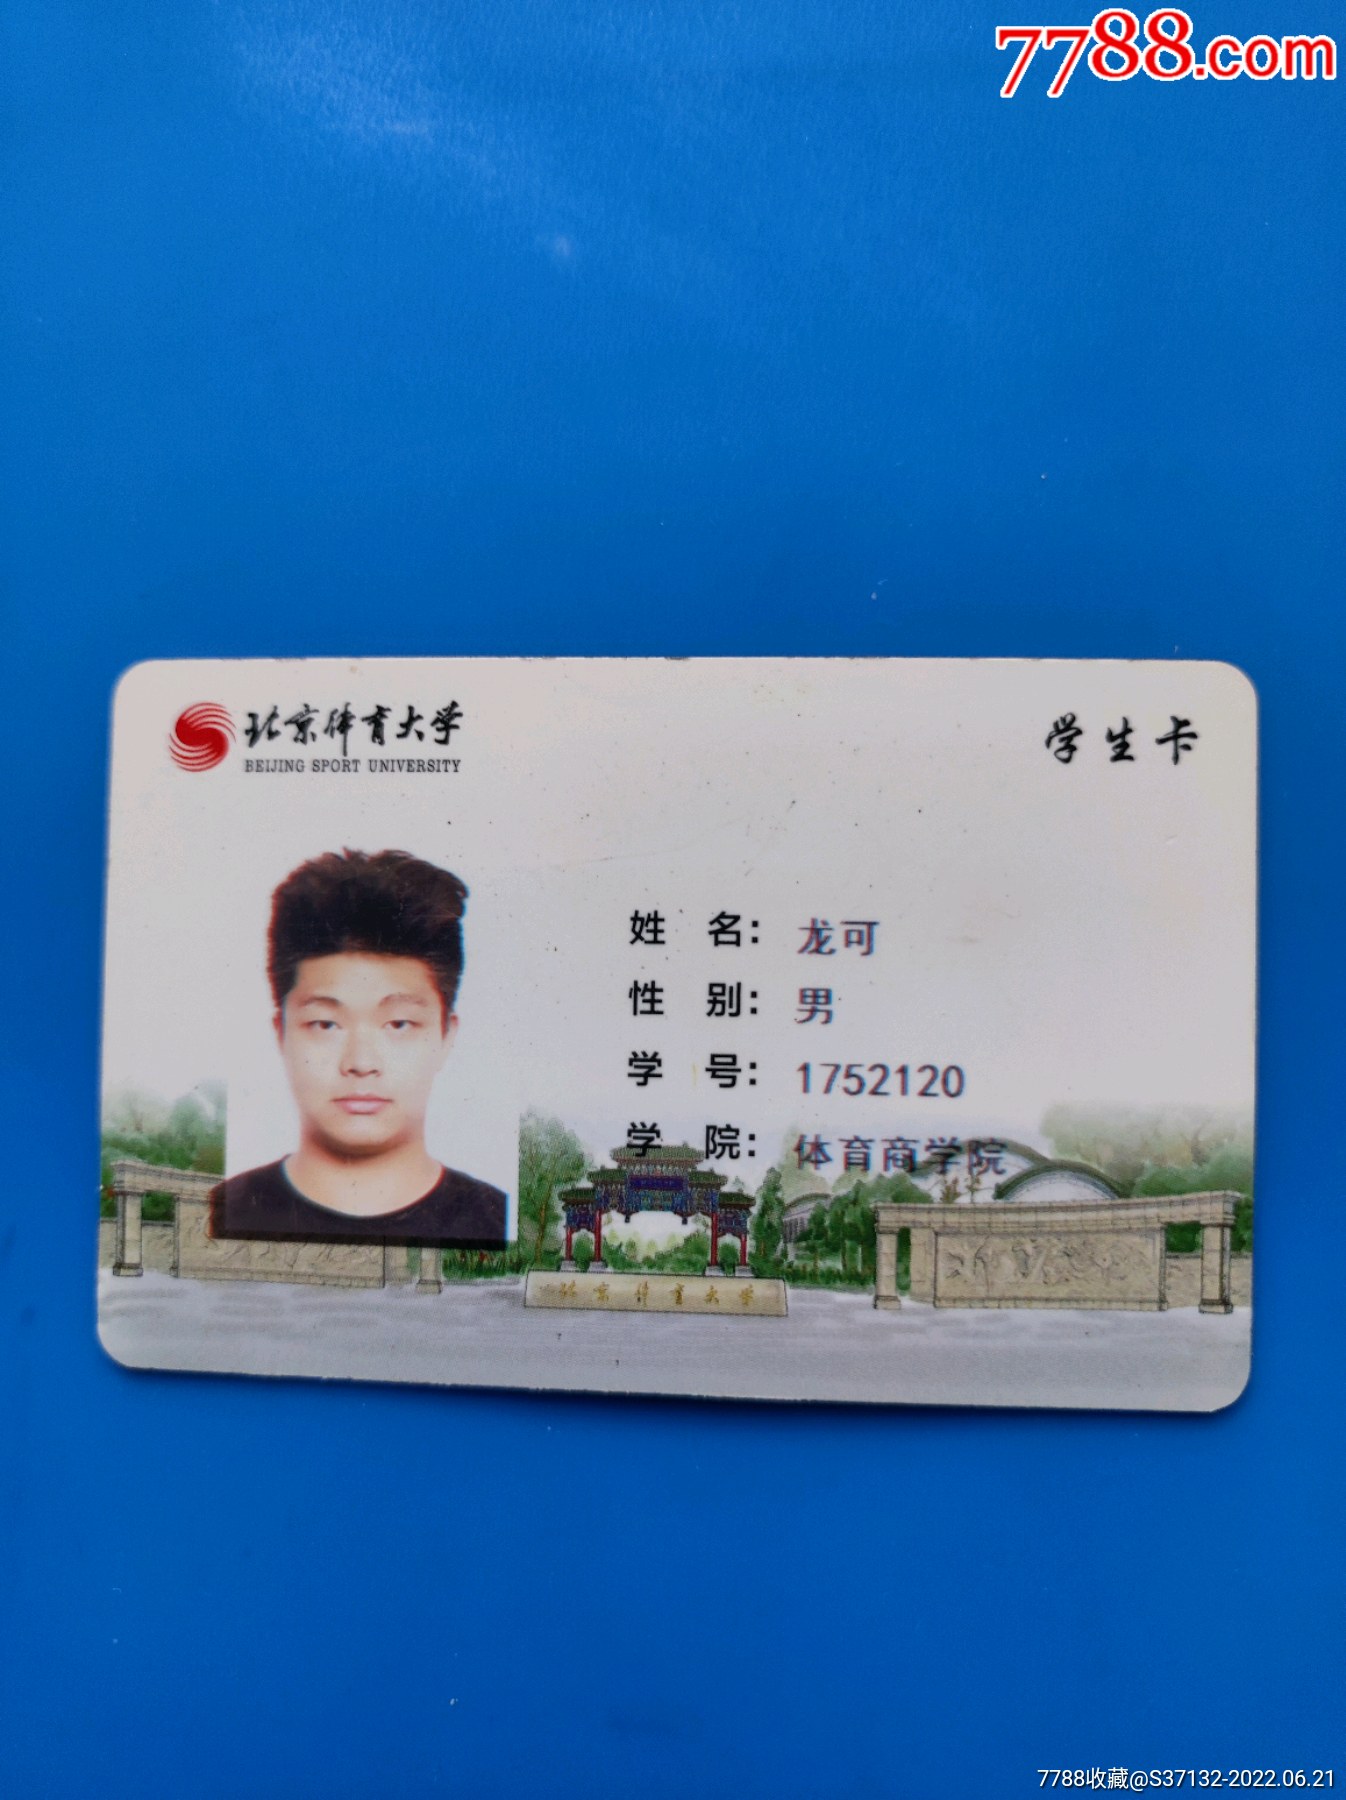 北京体育大学学生卡